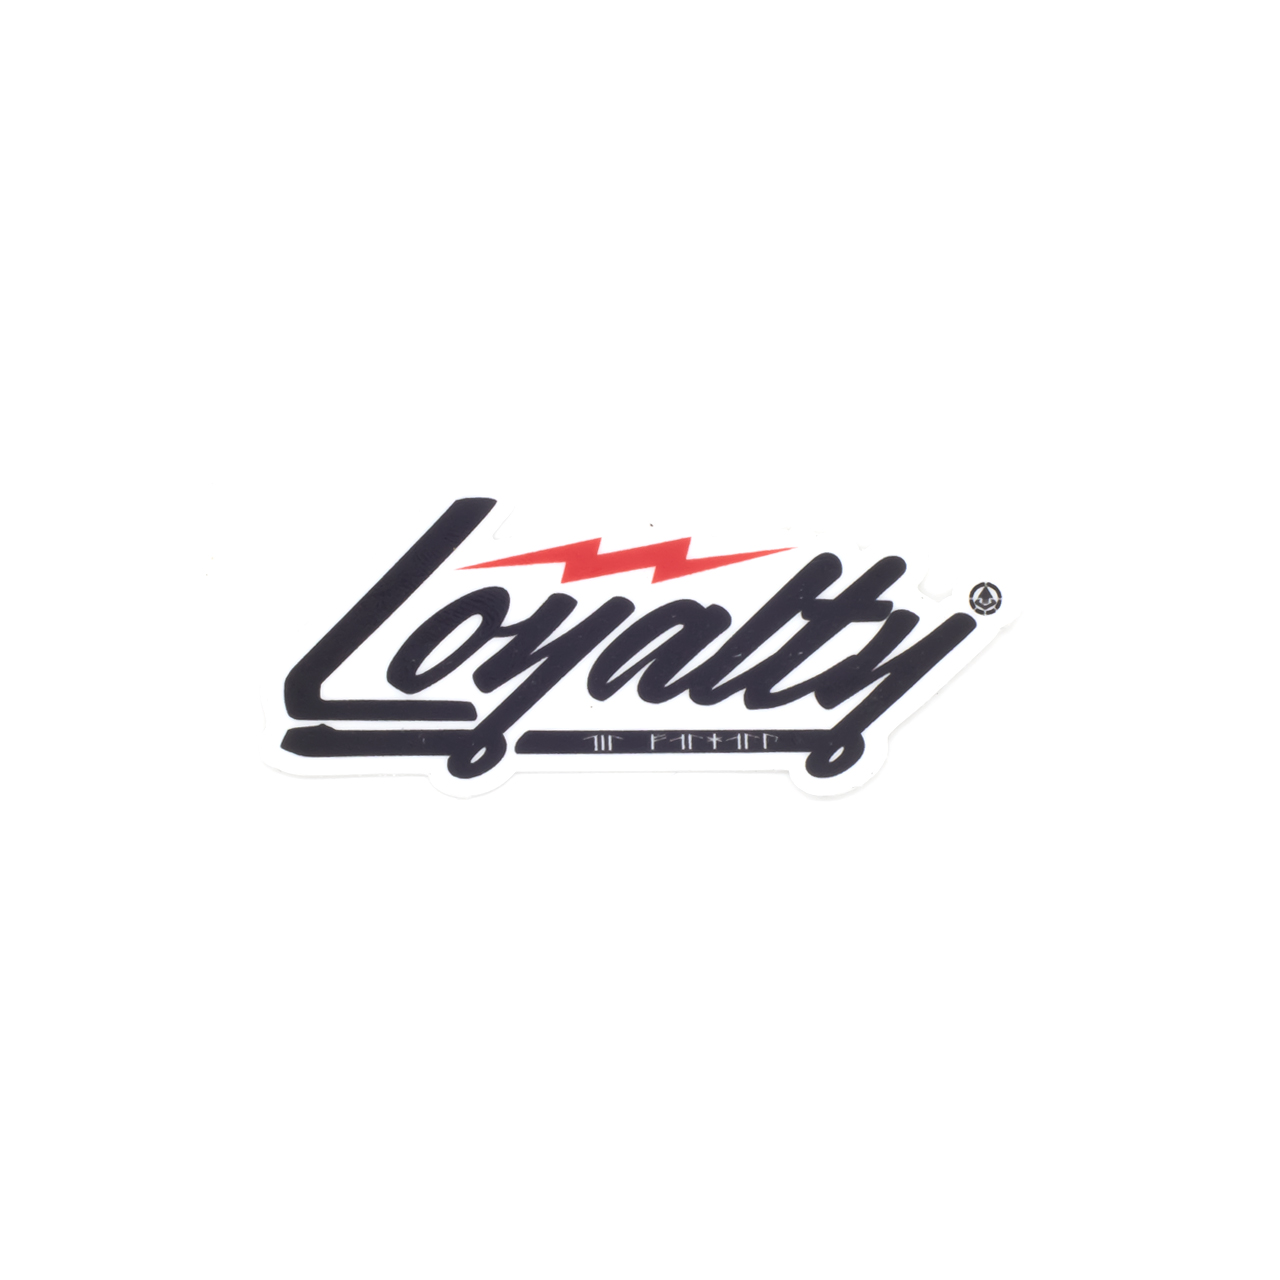 Sticker "LOYALTY", 75mm